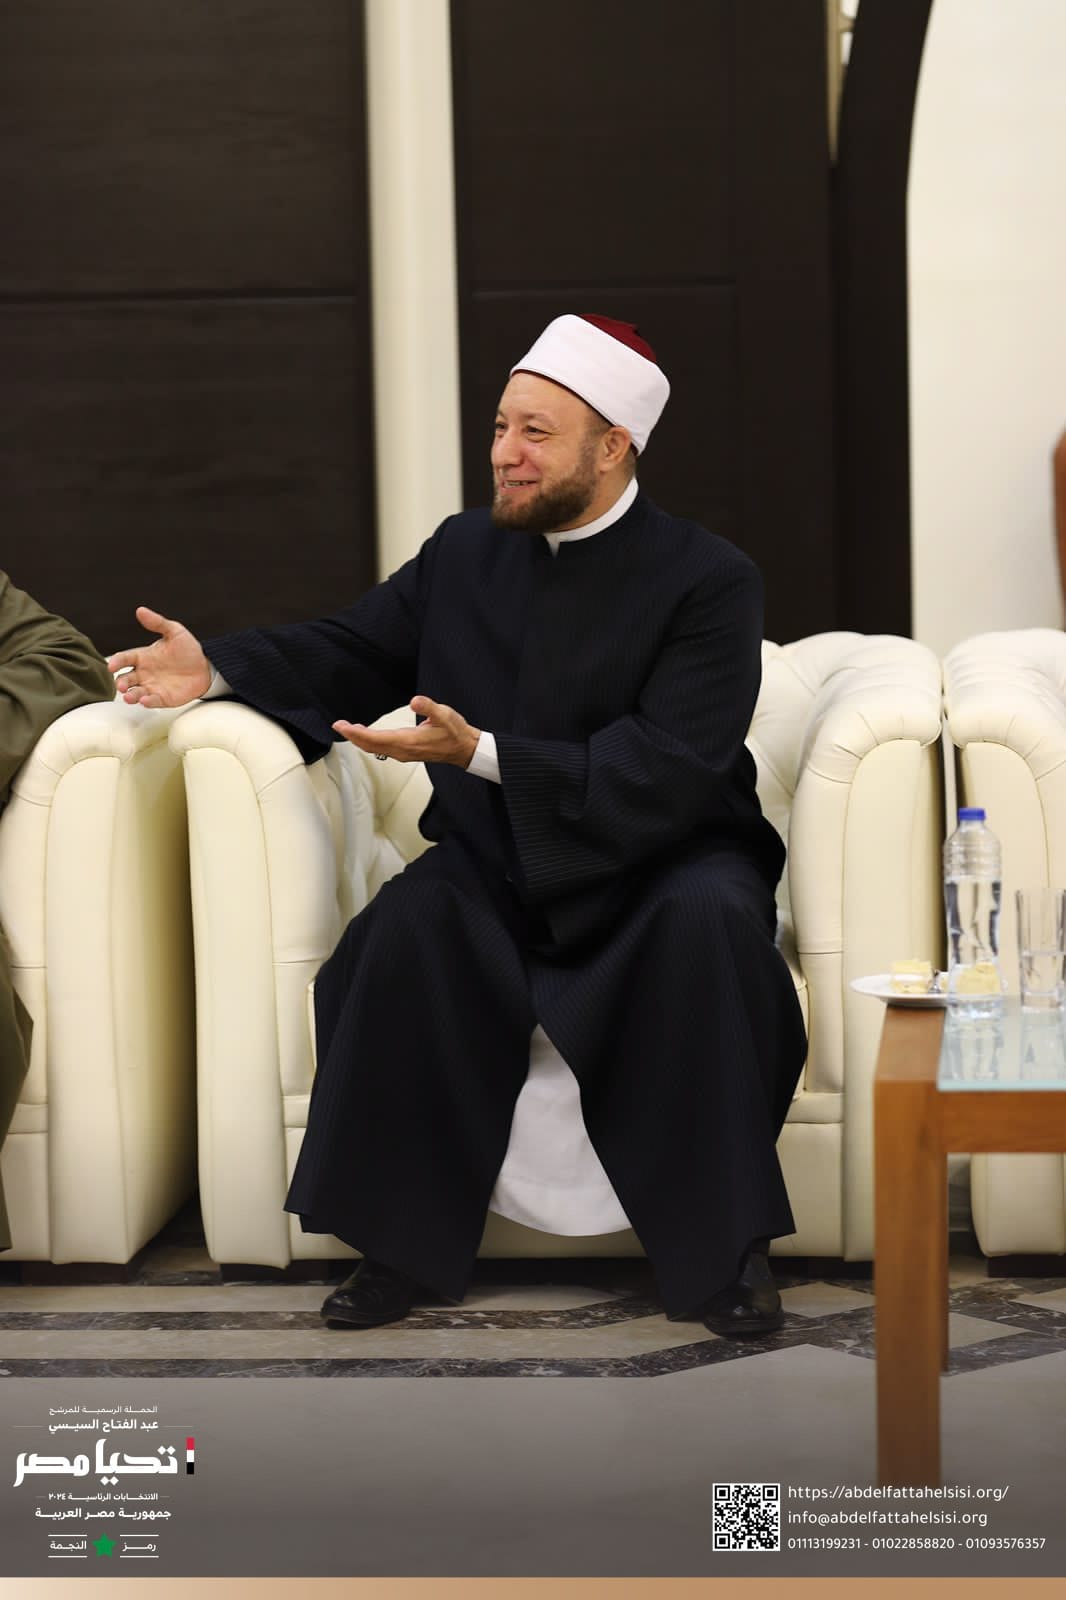 الحملة الرسمية للمرشح الرئاسي عبد الفتاح السيسي تلتقي المفتي الدكتور شوقي علام بدار الإفتاء (3)